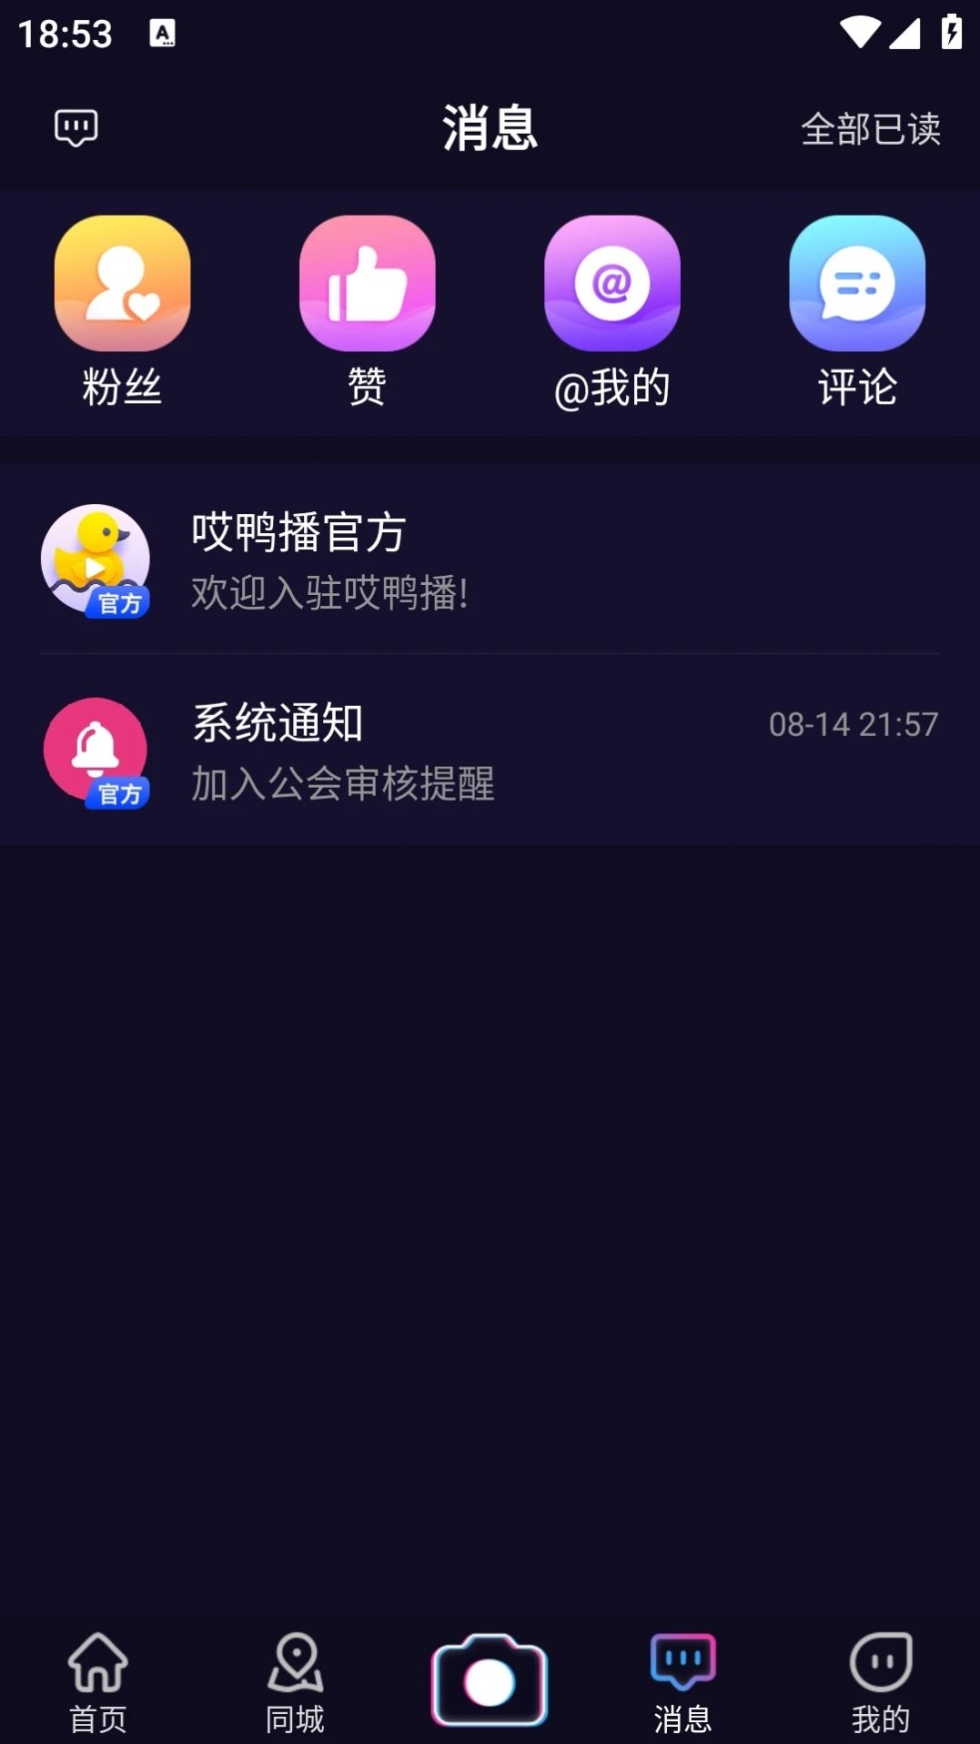 哎鸭播app官方版 v1.5.5截图1